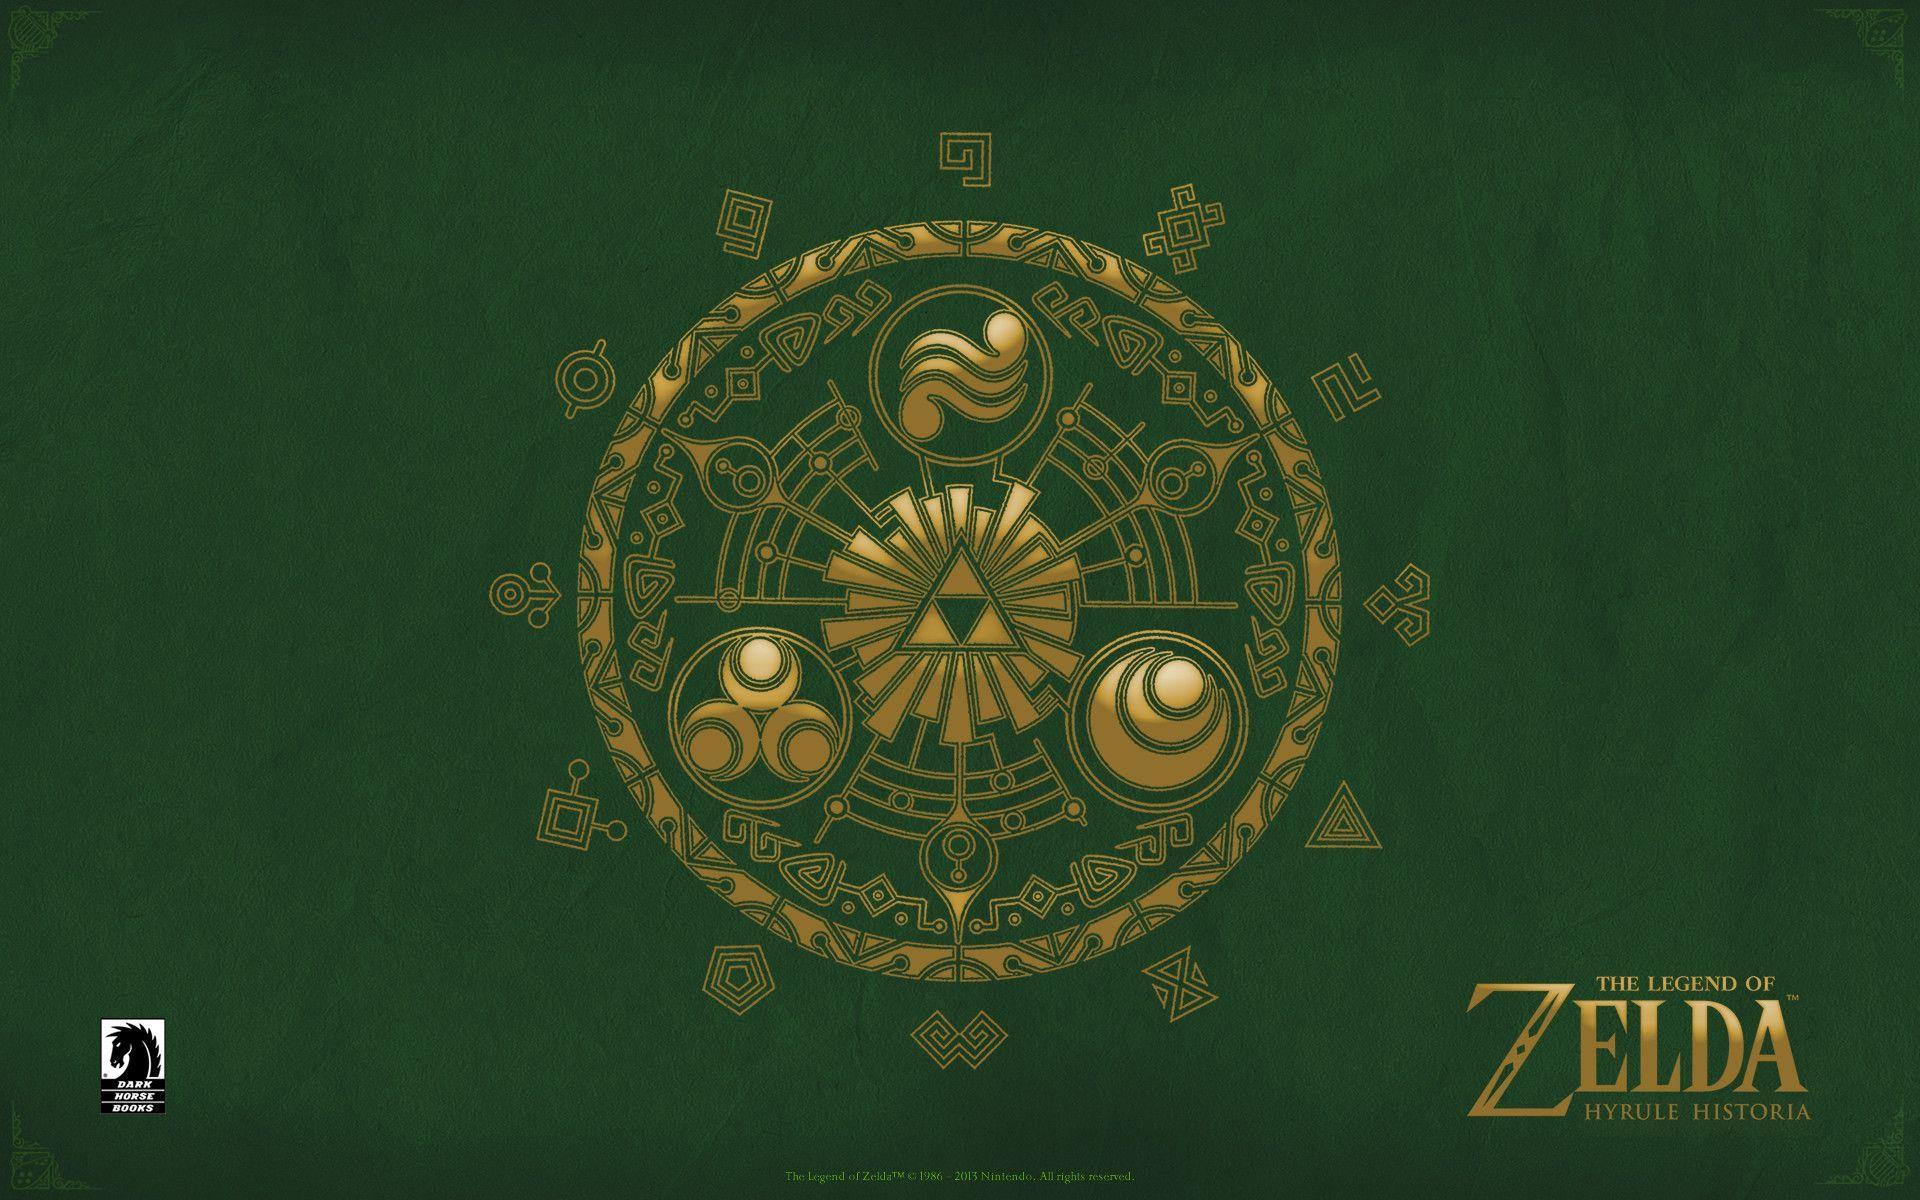 The Legend of Zelda - Desktops - Dark Horse Comics